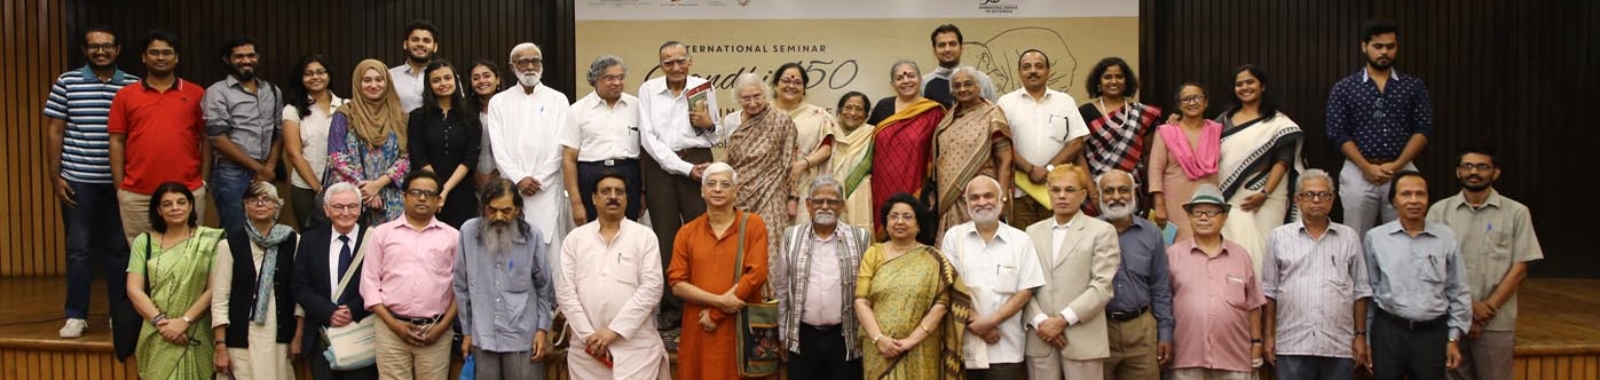 gandhi-at-150-international-seminar